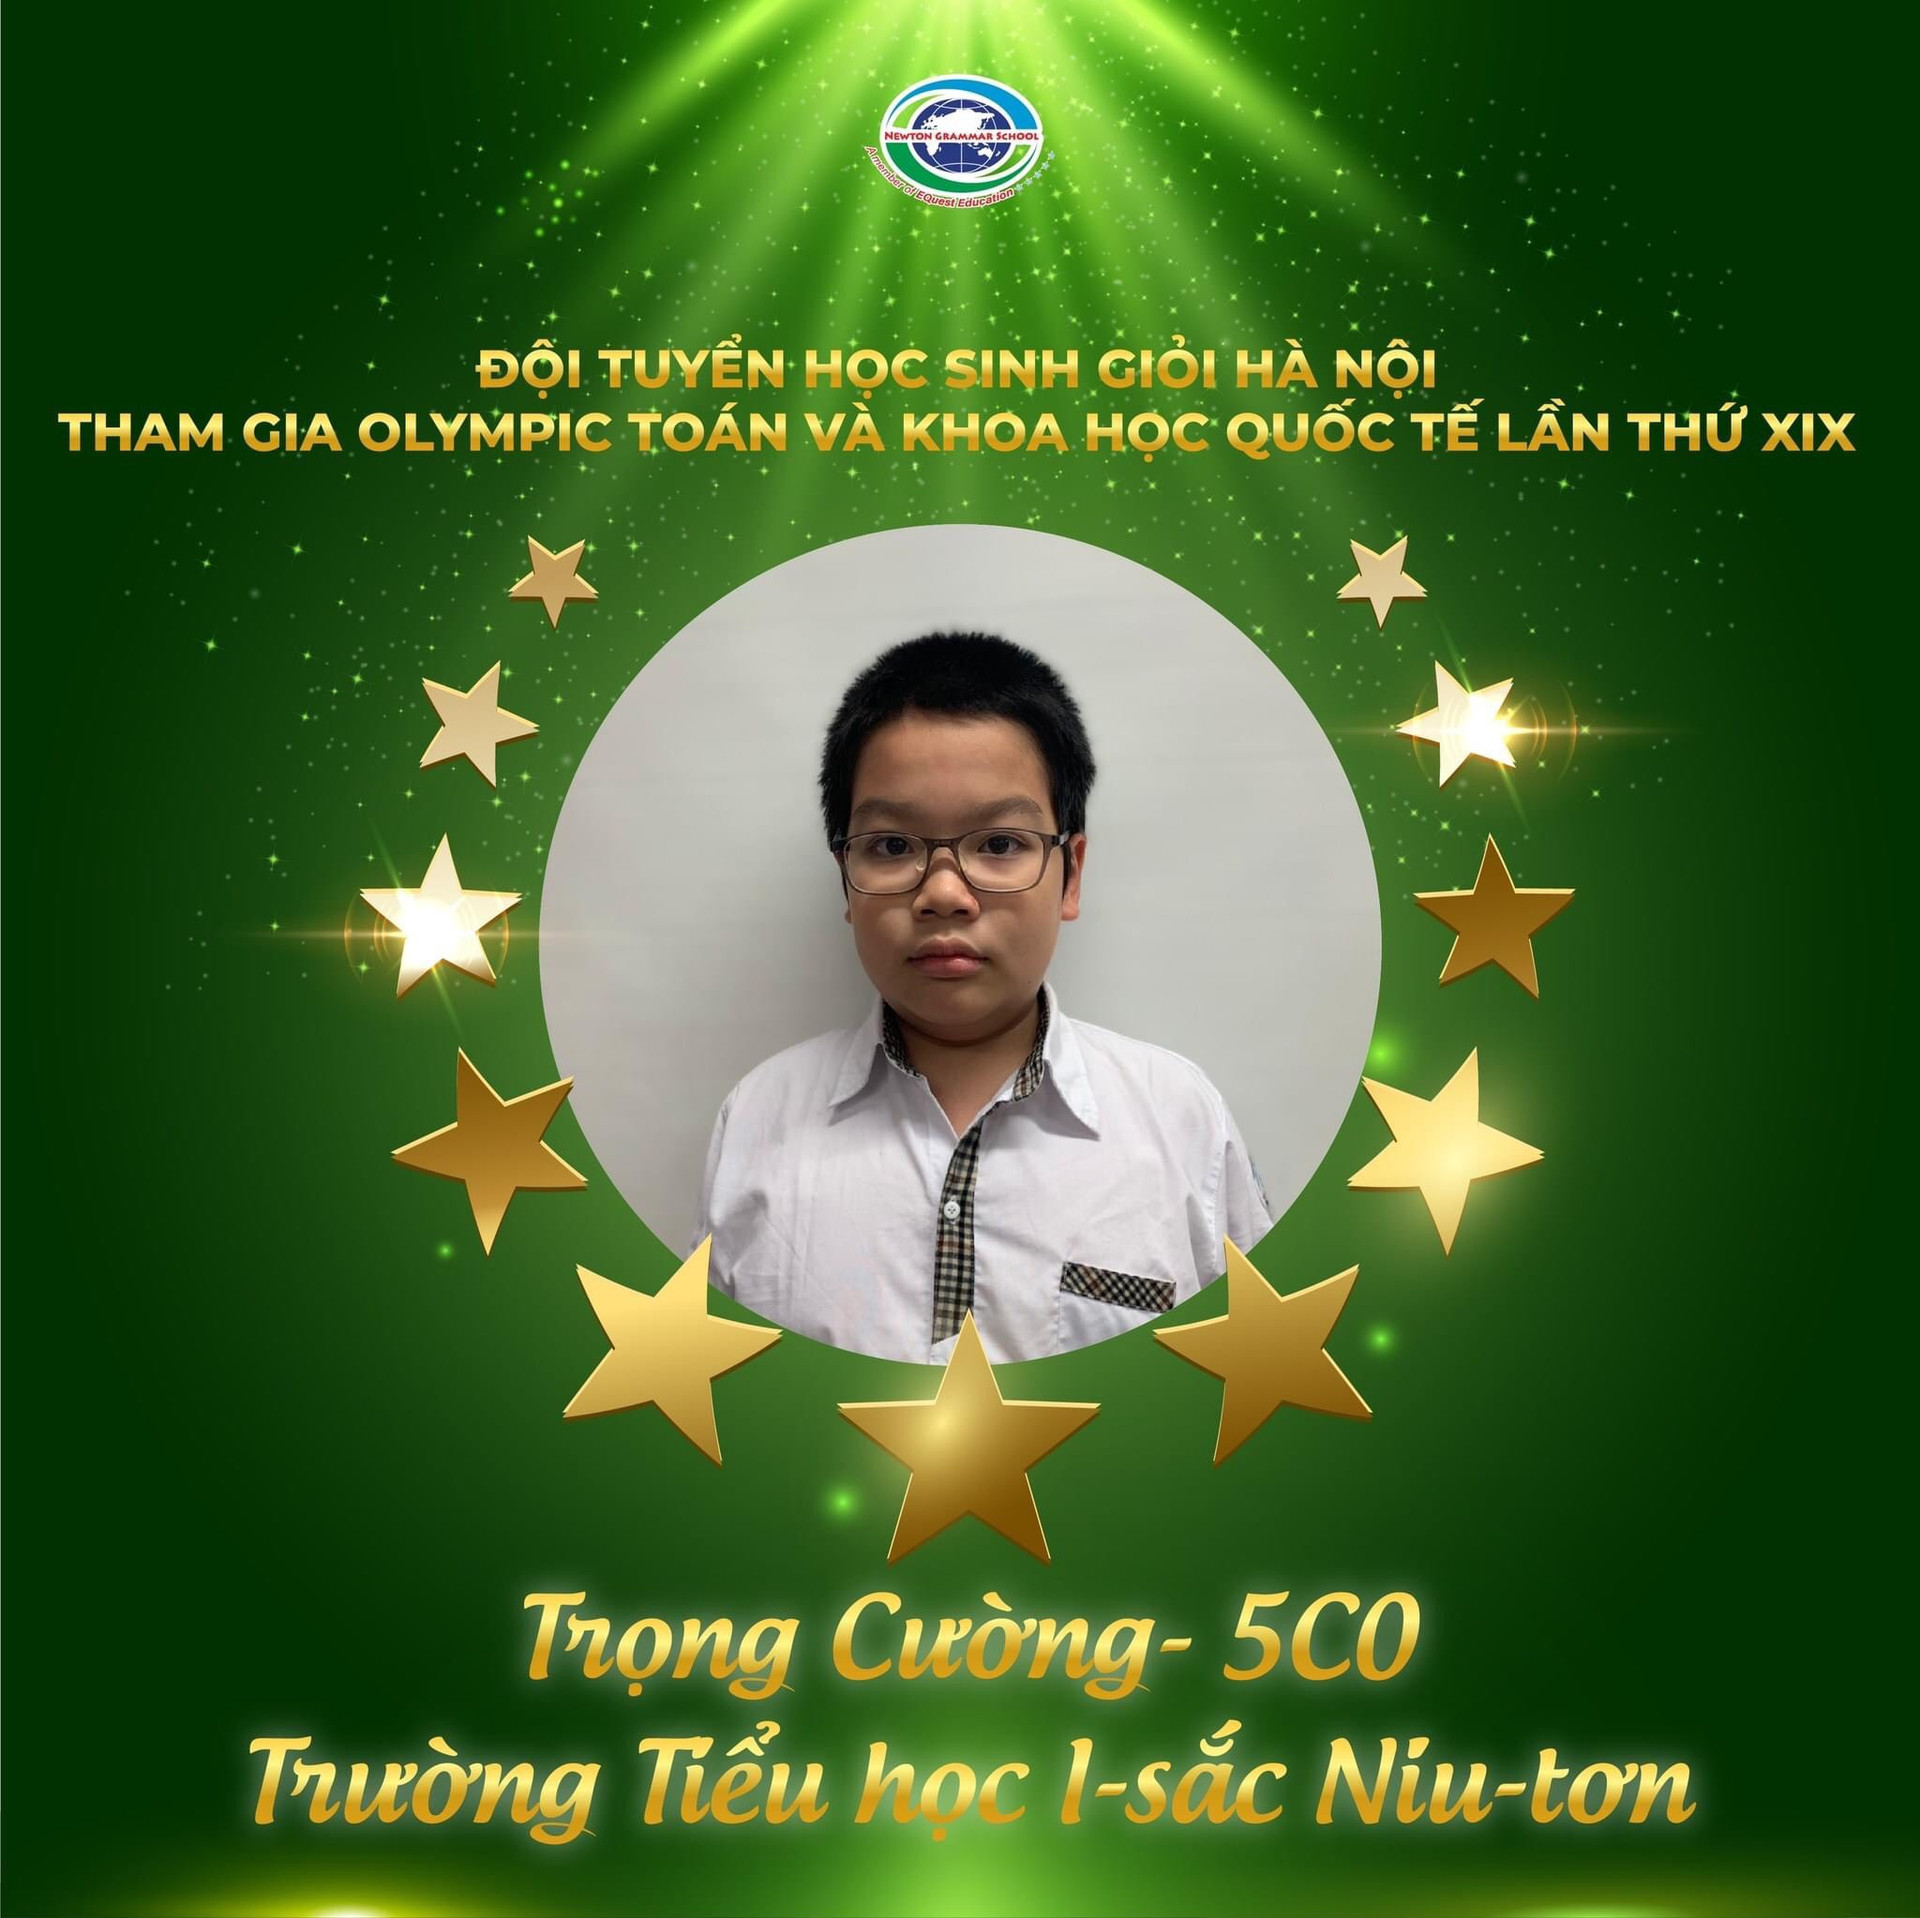 Em Đào Trọng Cường – Lớp 5G0, Trường Tiểu học I-sắc Niu-tơn: Huy chương Vàng duy nhất của tuyển Việt Nam tại môn Khoa học.